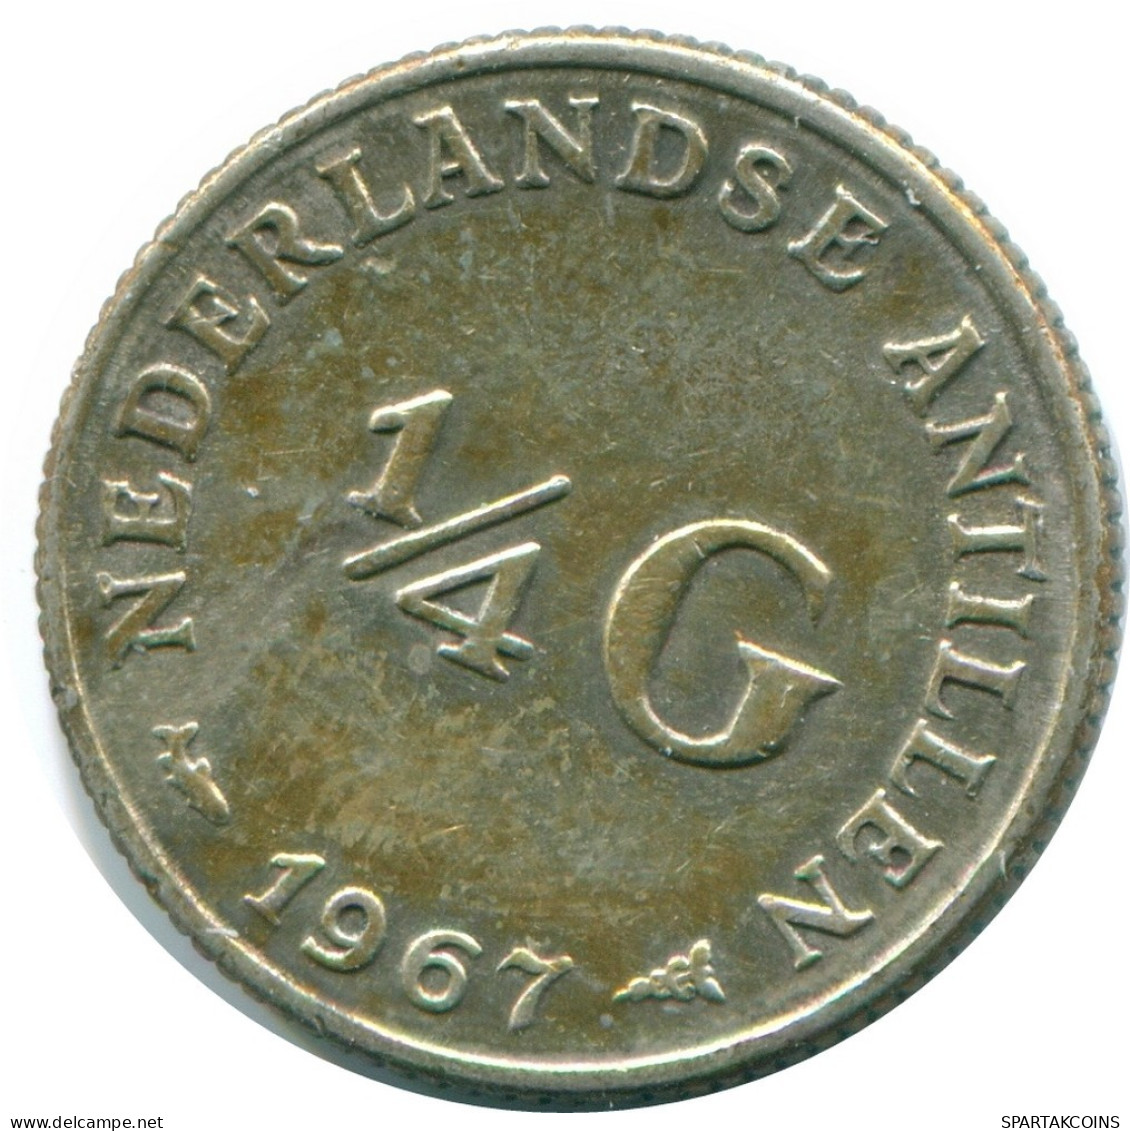 1/4 GULDEN 1967 NIEDERLÄNDISCHE ANTILLEN SILBER Koloniale Münze #NL11594.4.D.A - Nederlandse Antillen